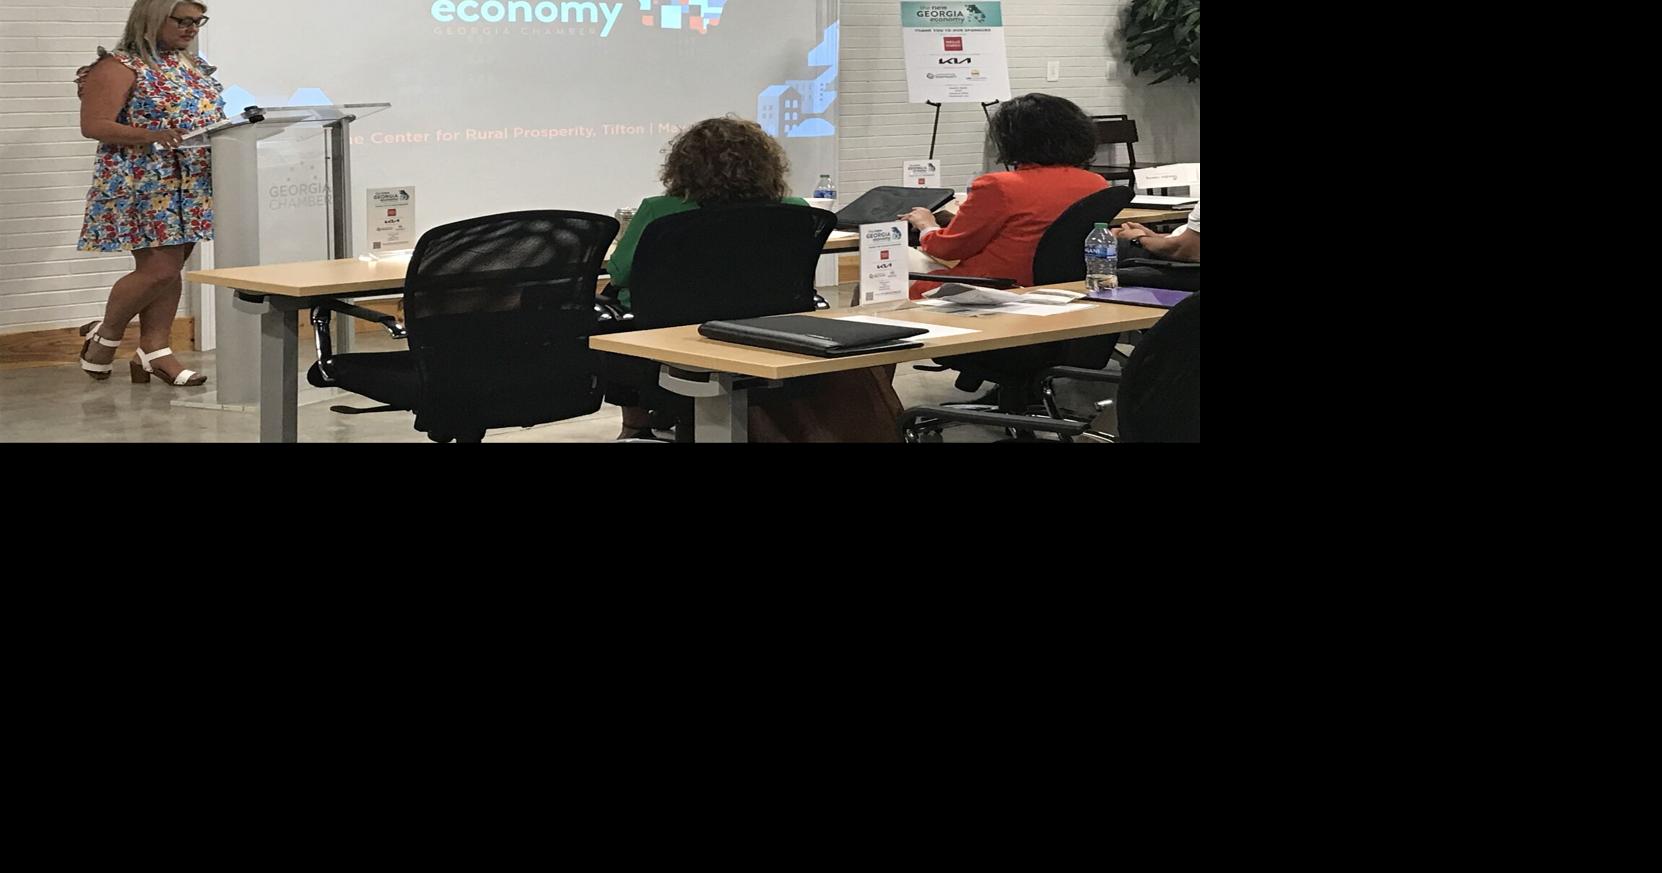 Tifton talks business with New Georgia Economy Tour